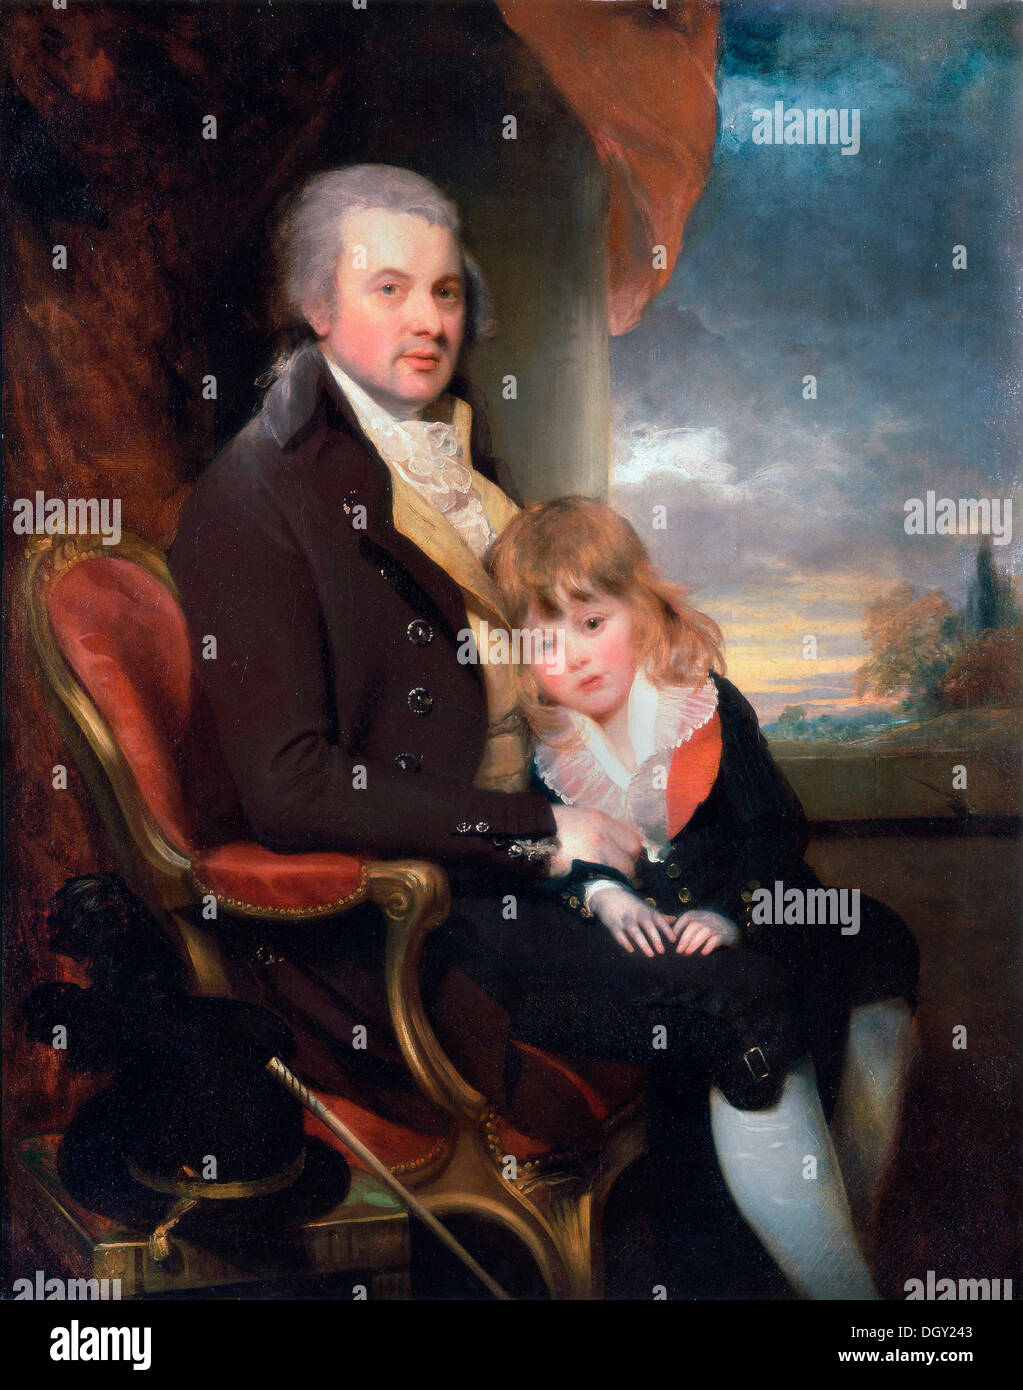 William Beechey, Edward George Lind und sein Sohn, Montague. Ca. 1800 Öl auf Leinwand. Yale Center for British Art, New Haven, USA Stockfoto